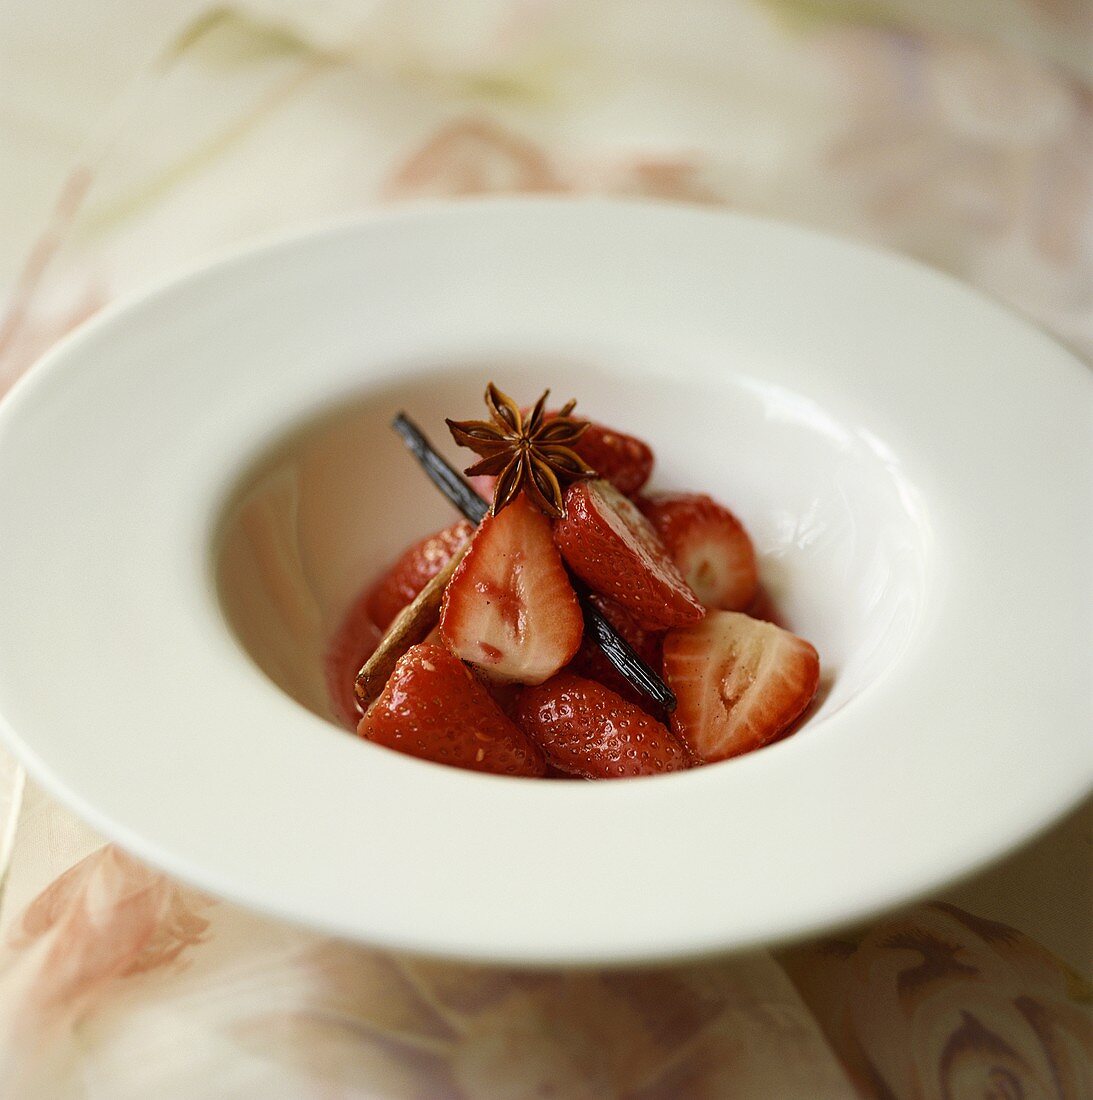 Marinated strawberries with star anise, cinnamon & vanilla